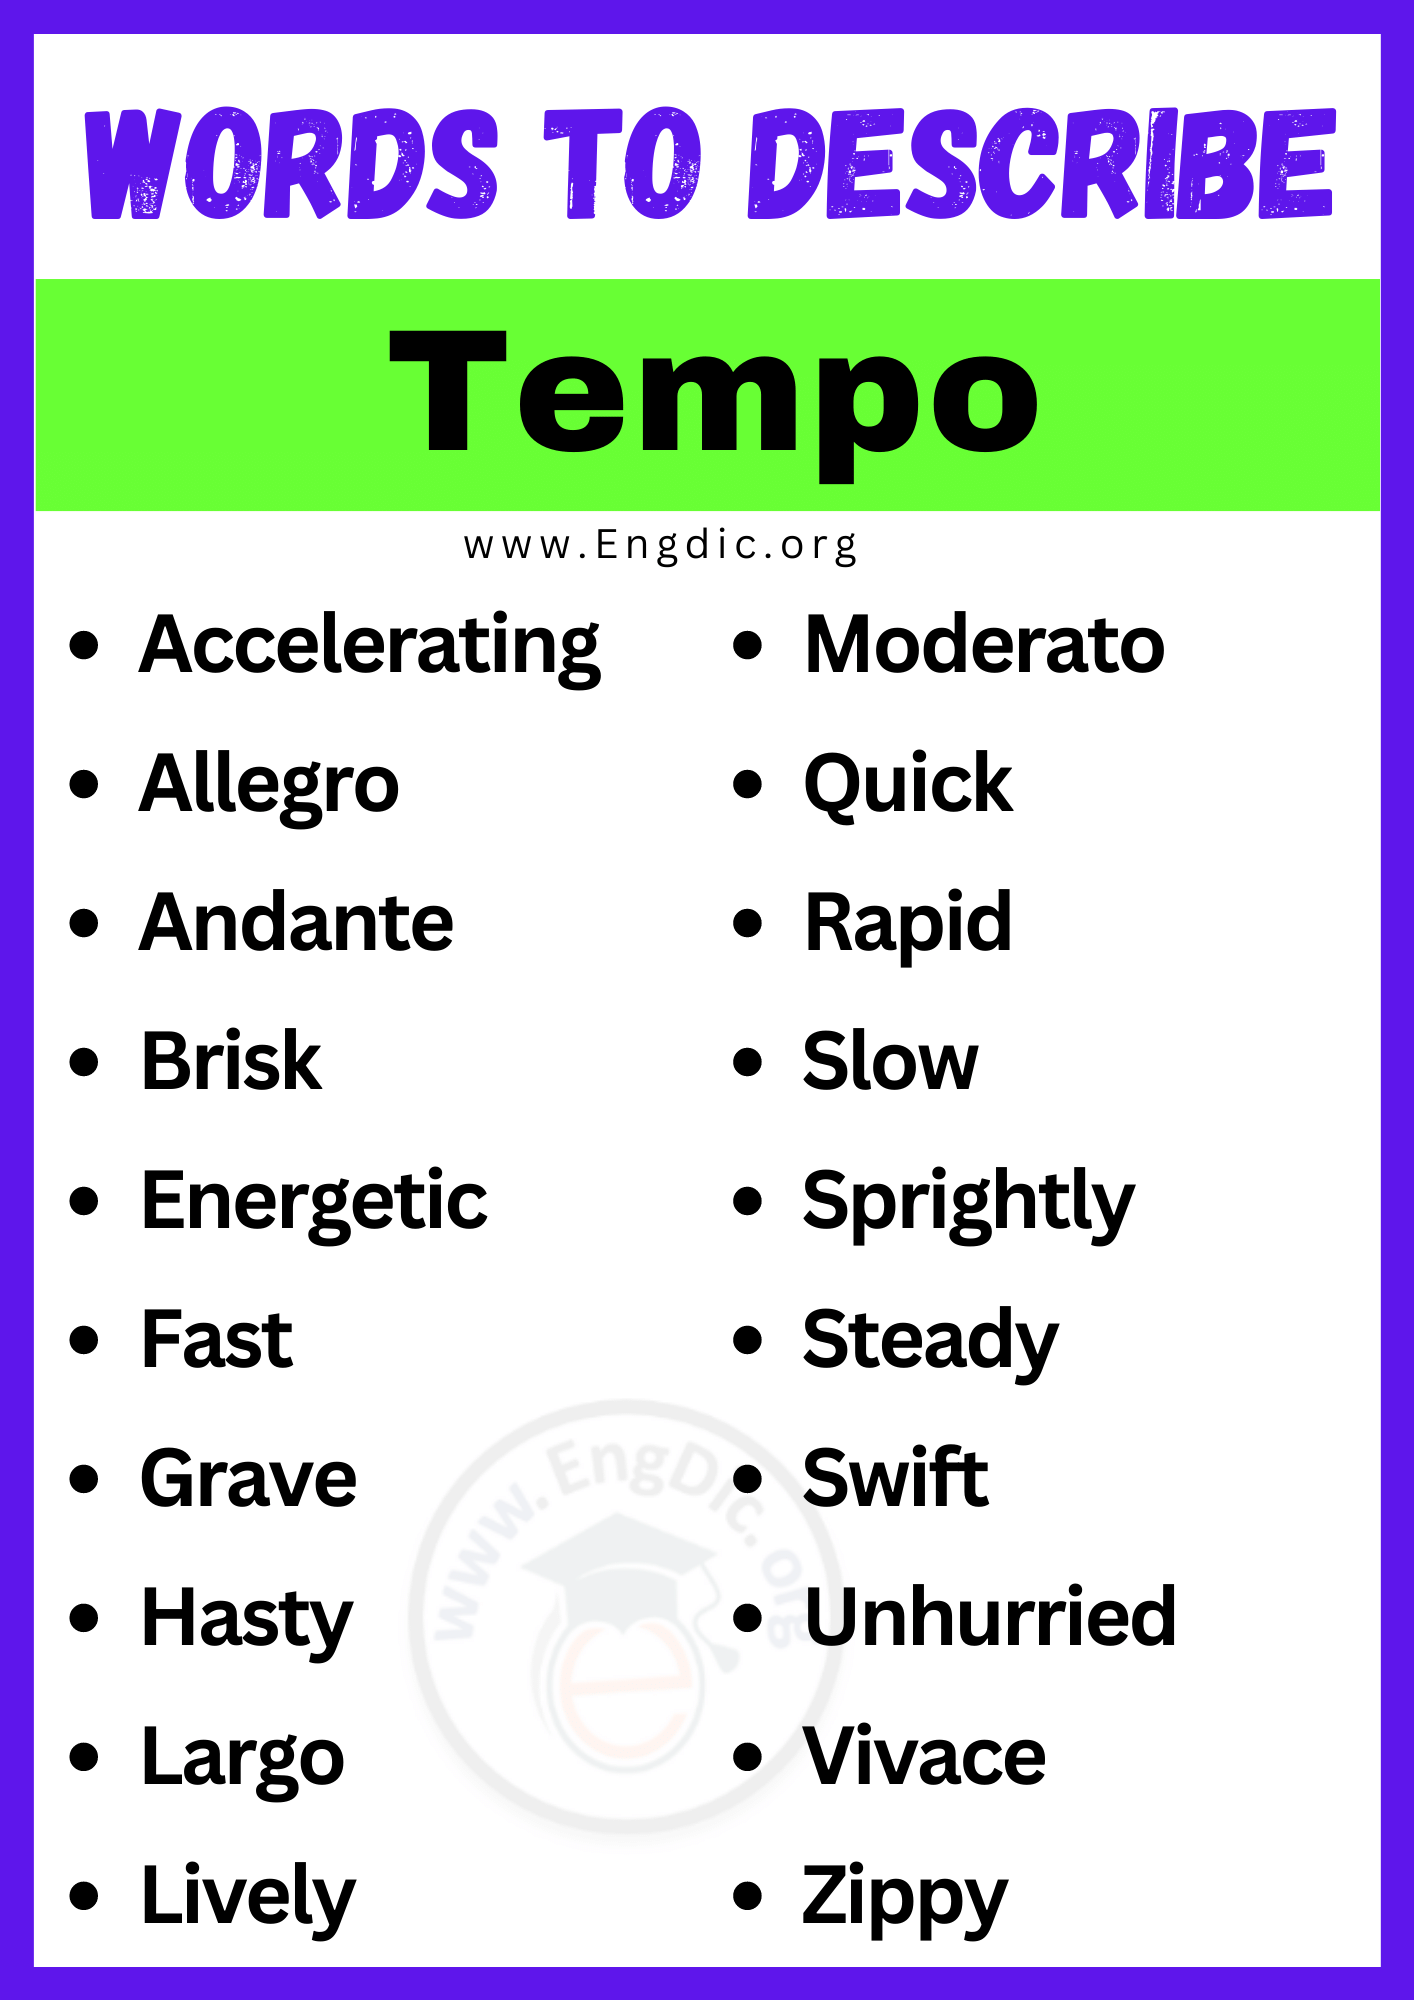 Words to Describe Tempo